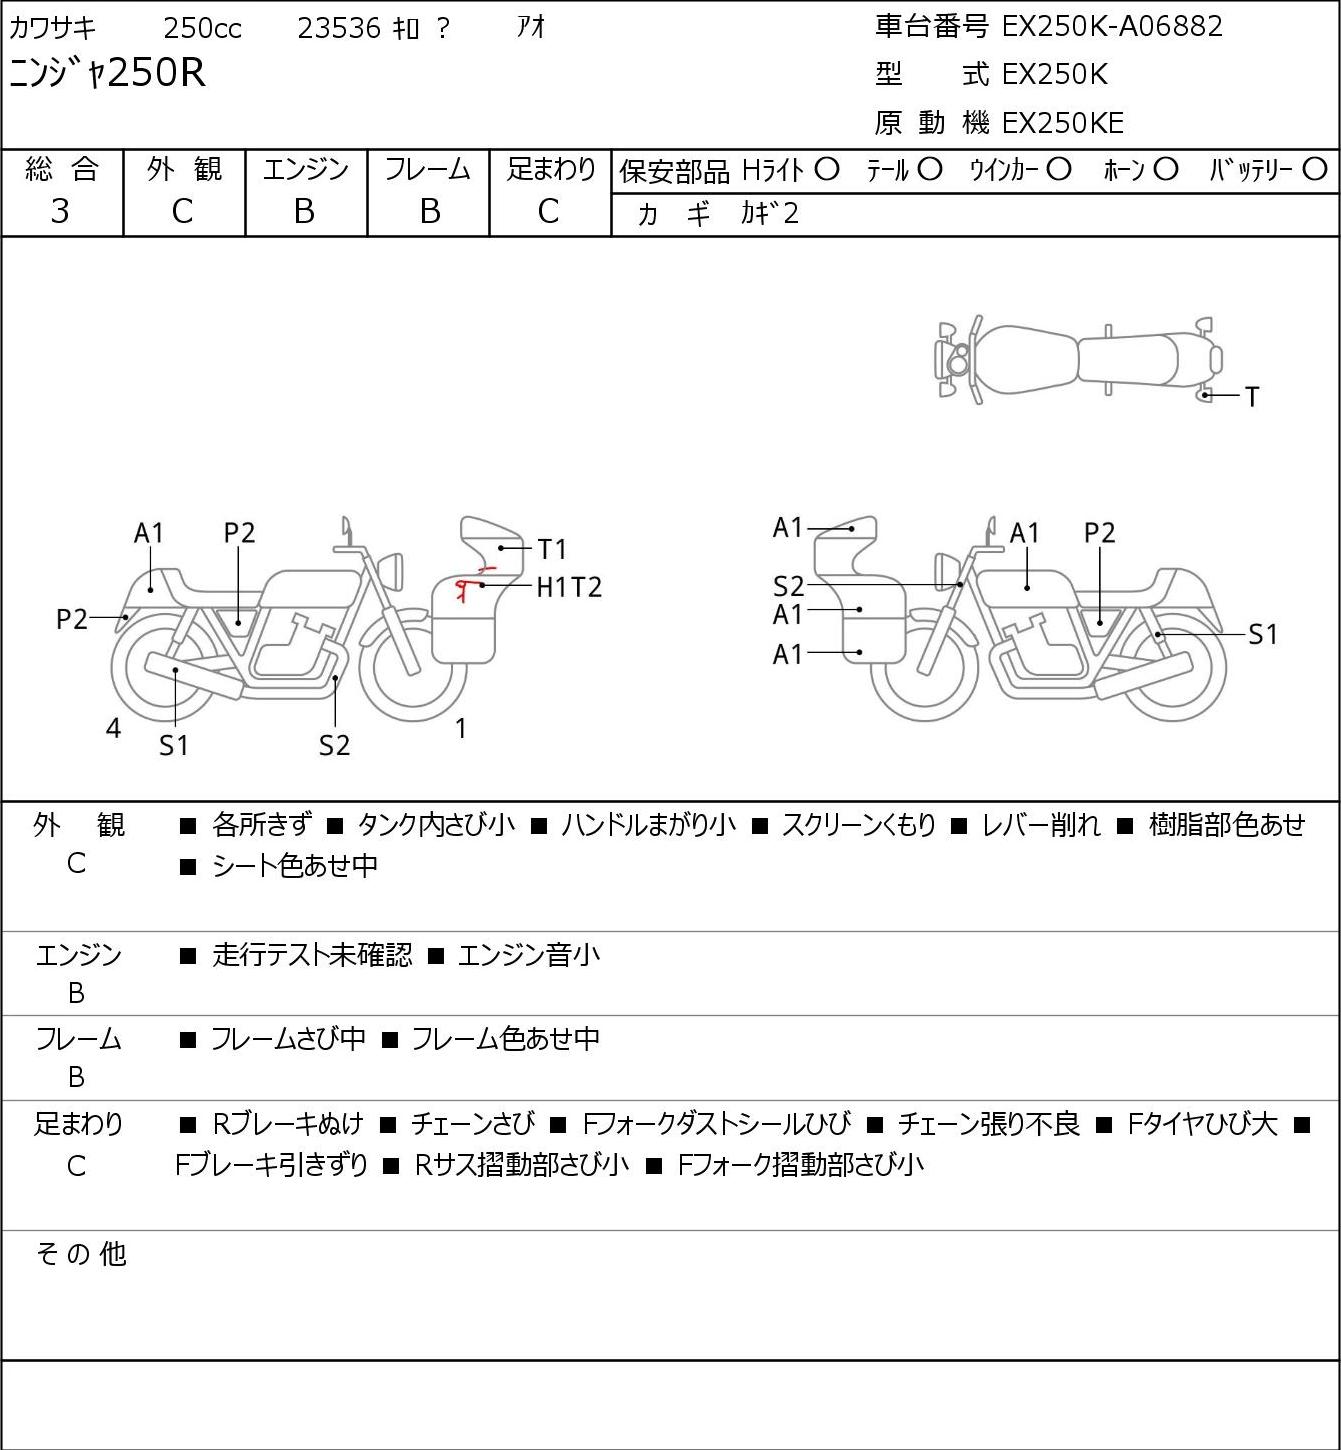 Kawasaki NINJA 250 R EX250K г. 23536